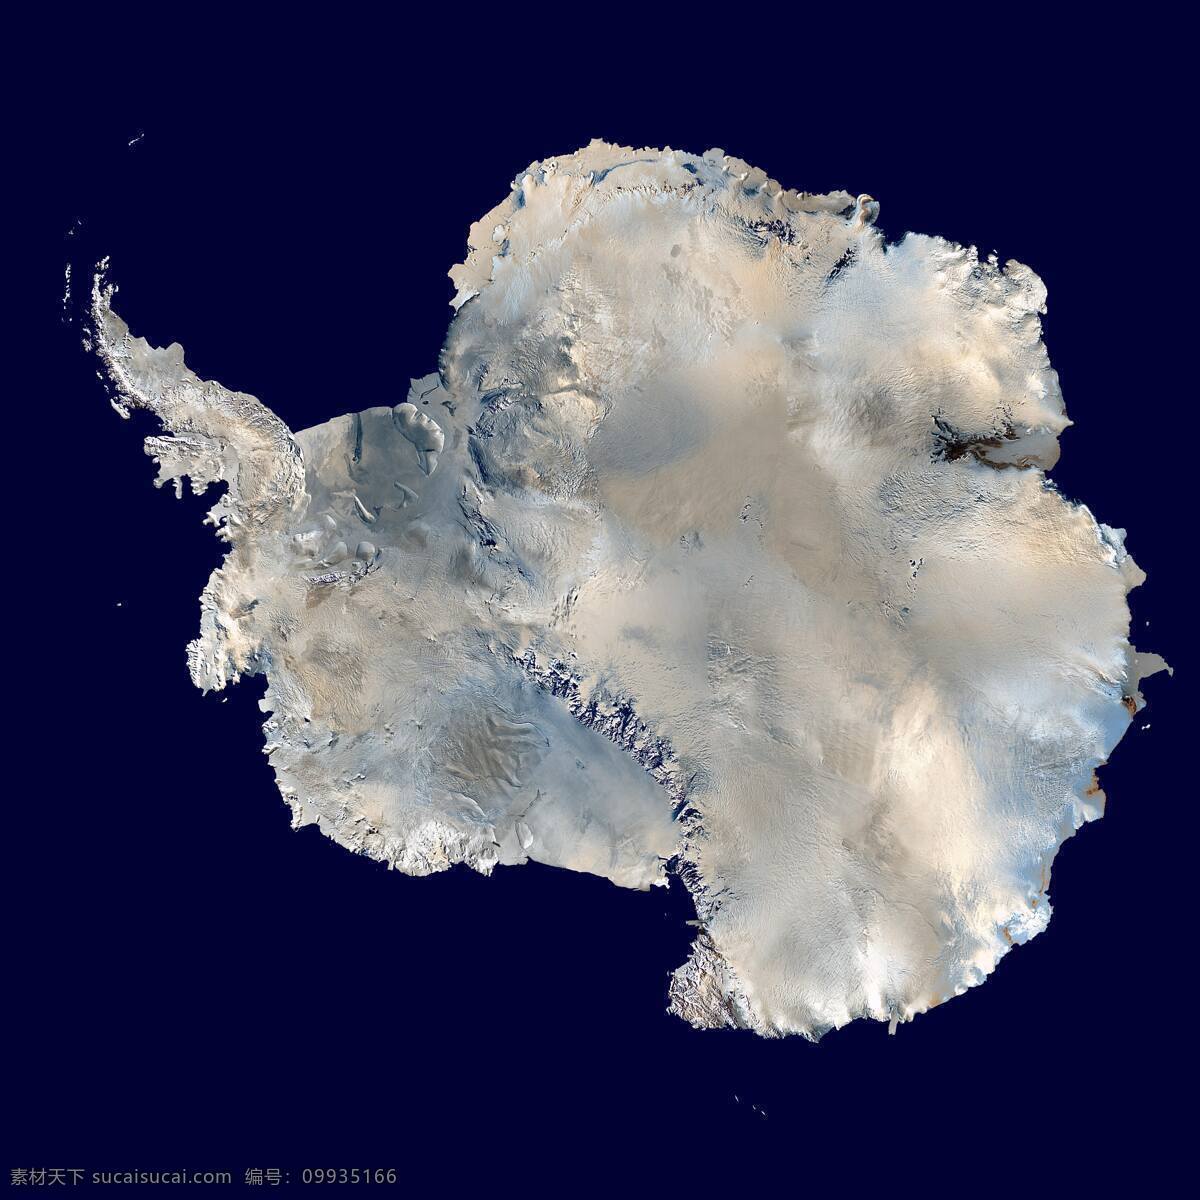 南极洲 南极洲俯视图 板块 图 全景 南极洲全景 白茫茫 雪景 南极洲雪景 雪地 自然景观 自然风景 摄影图库